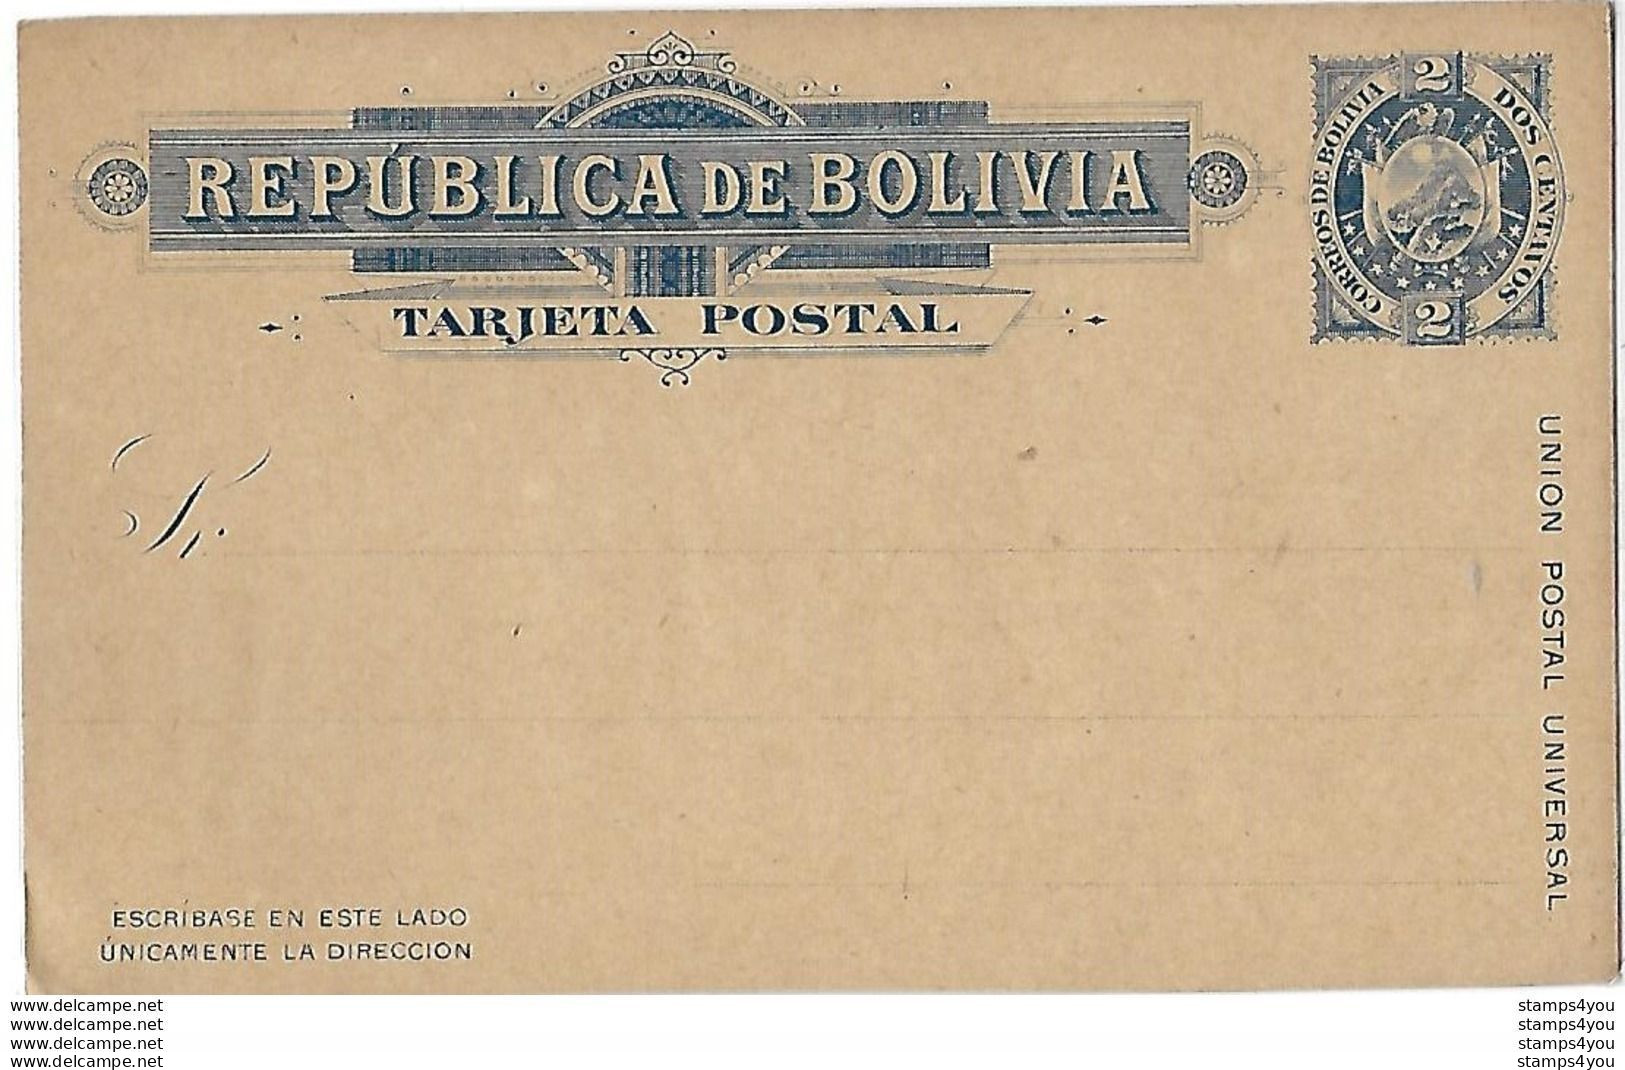 120 - 11 - Entier Postal Neuf Dos Centavos - Voorfilatelie